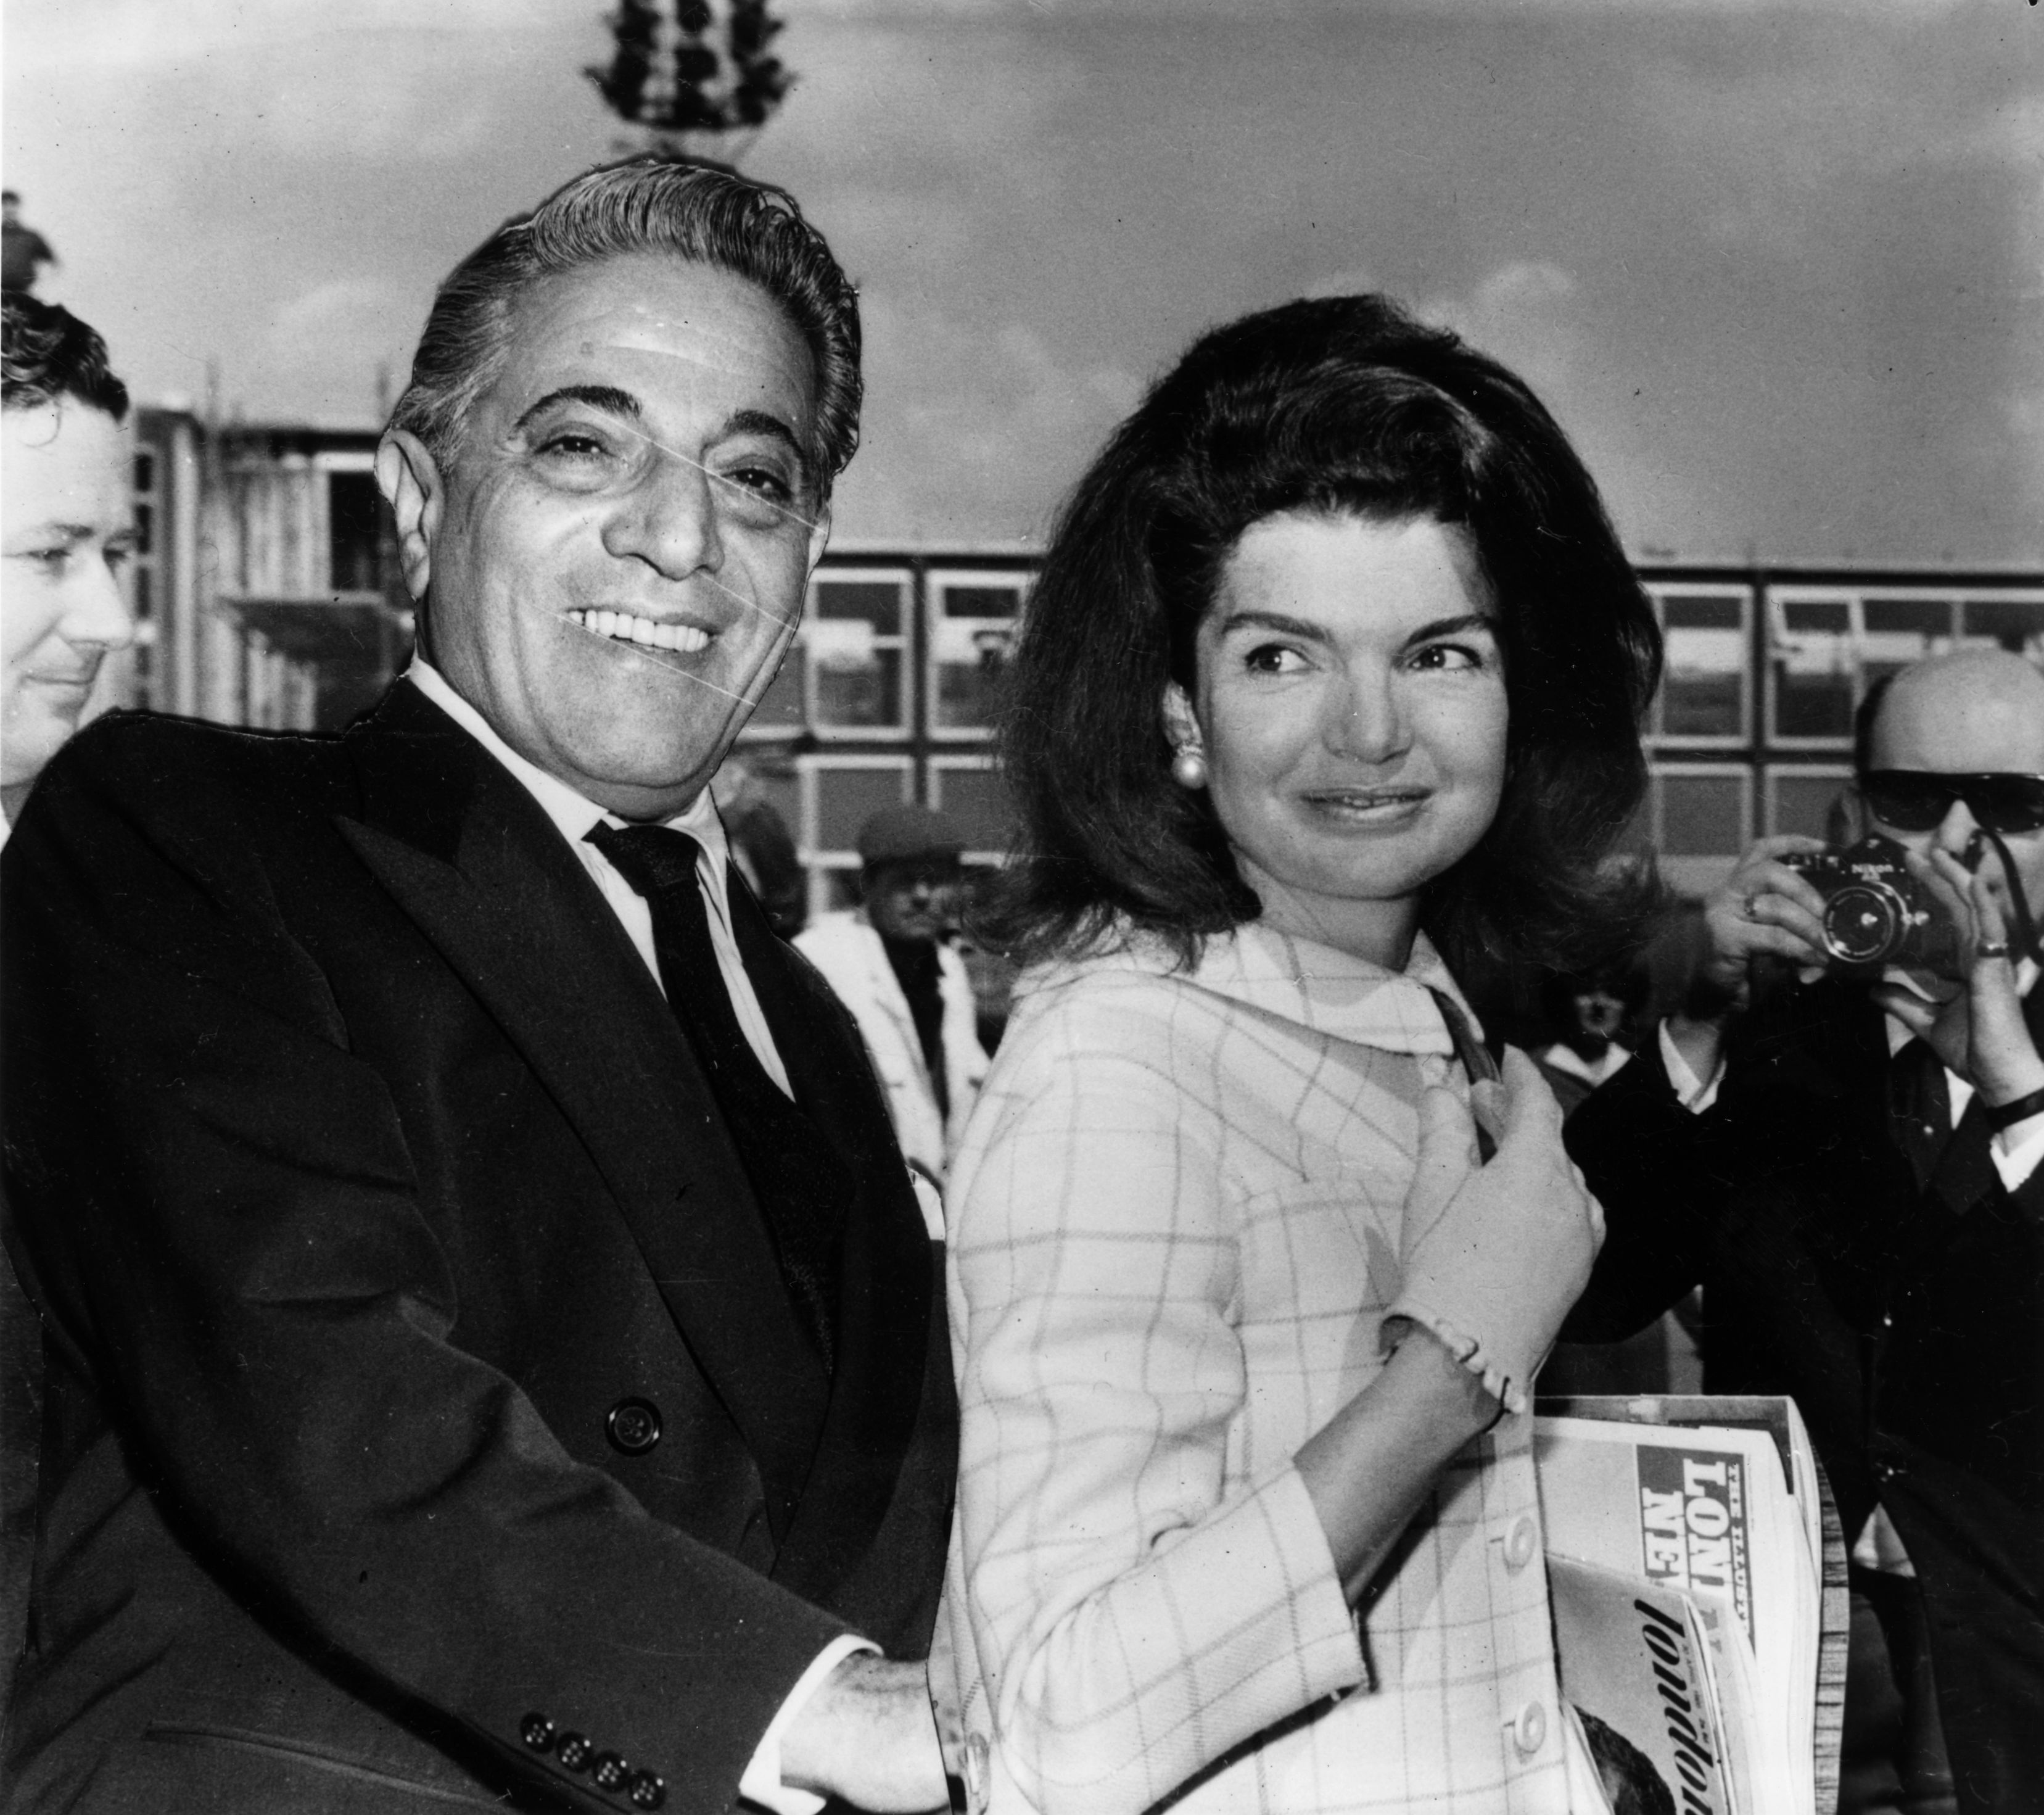 Le 18 octobre 1968, le magnat de la marine marchande, Aristotle Onassis et Jackie Kennedy Onassis. | Source: Getty Images.